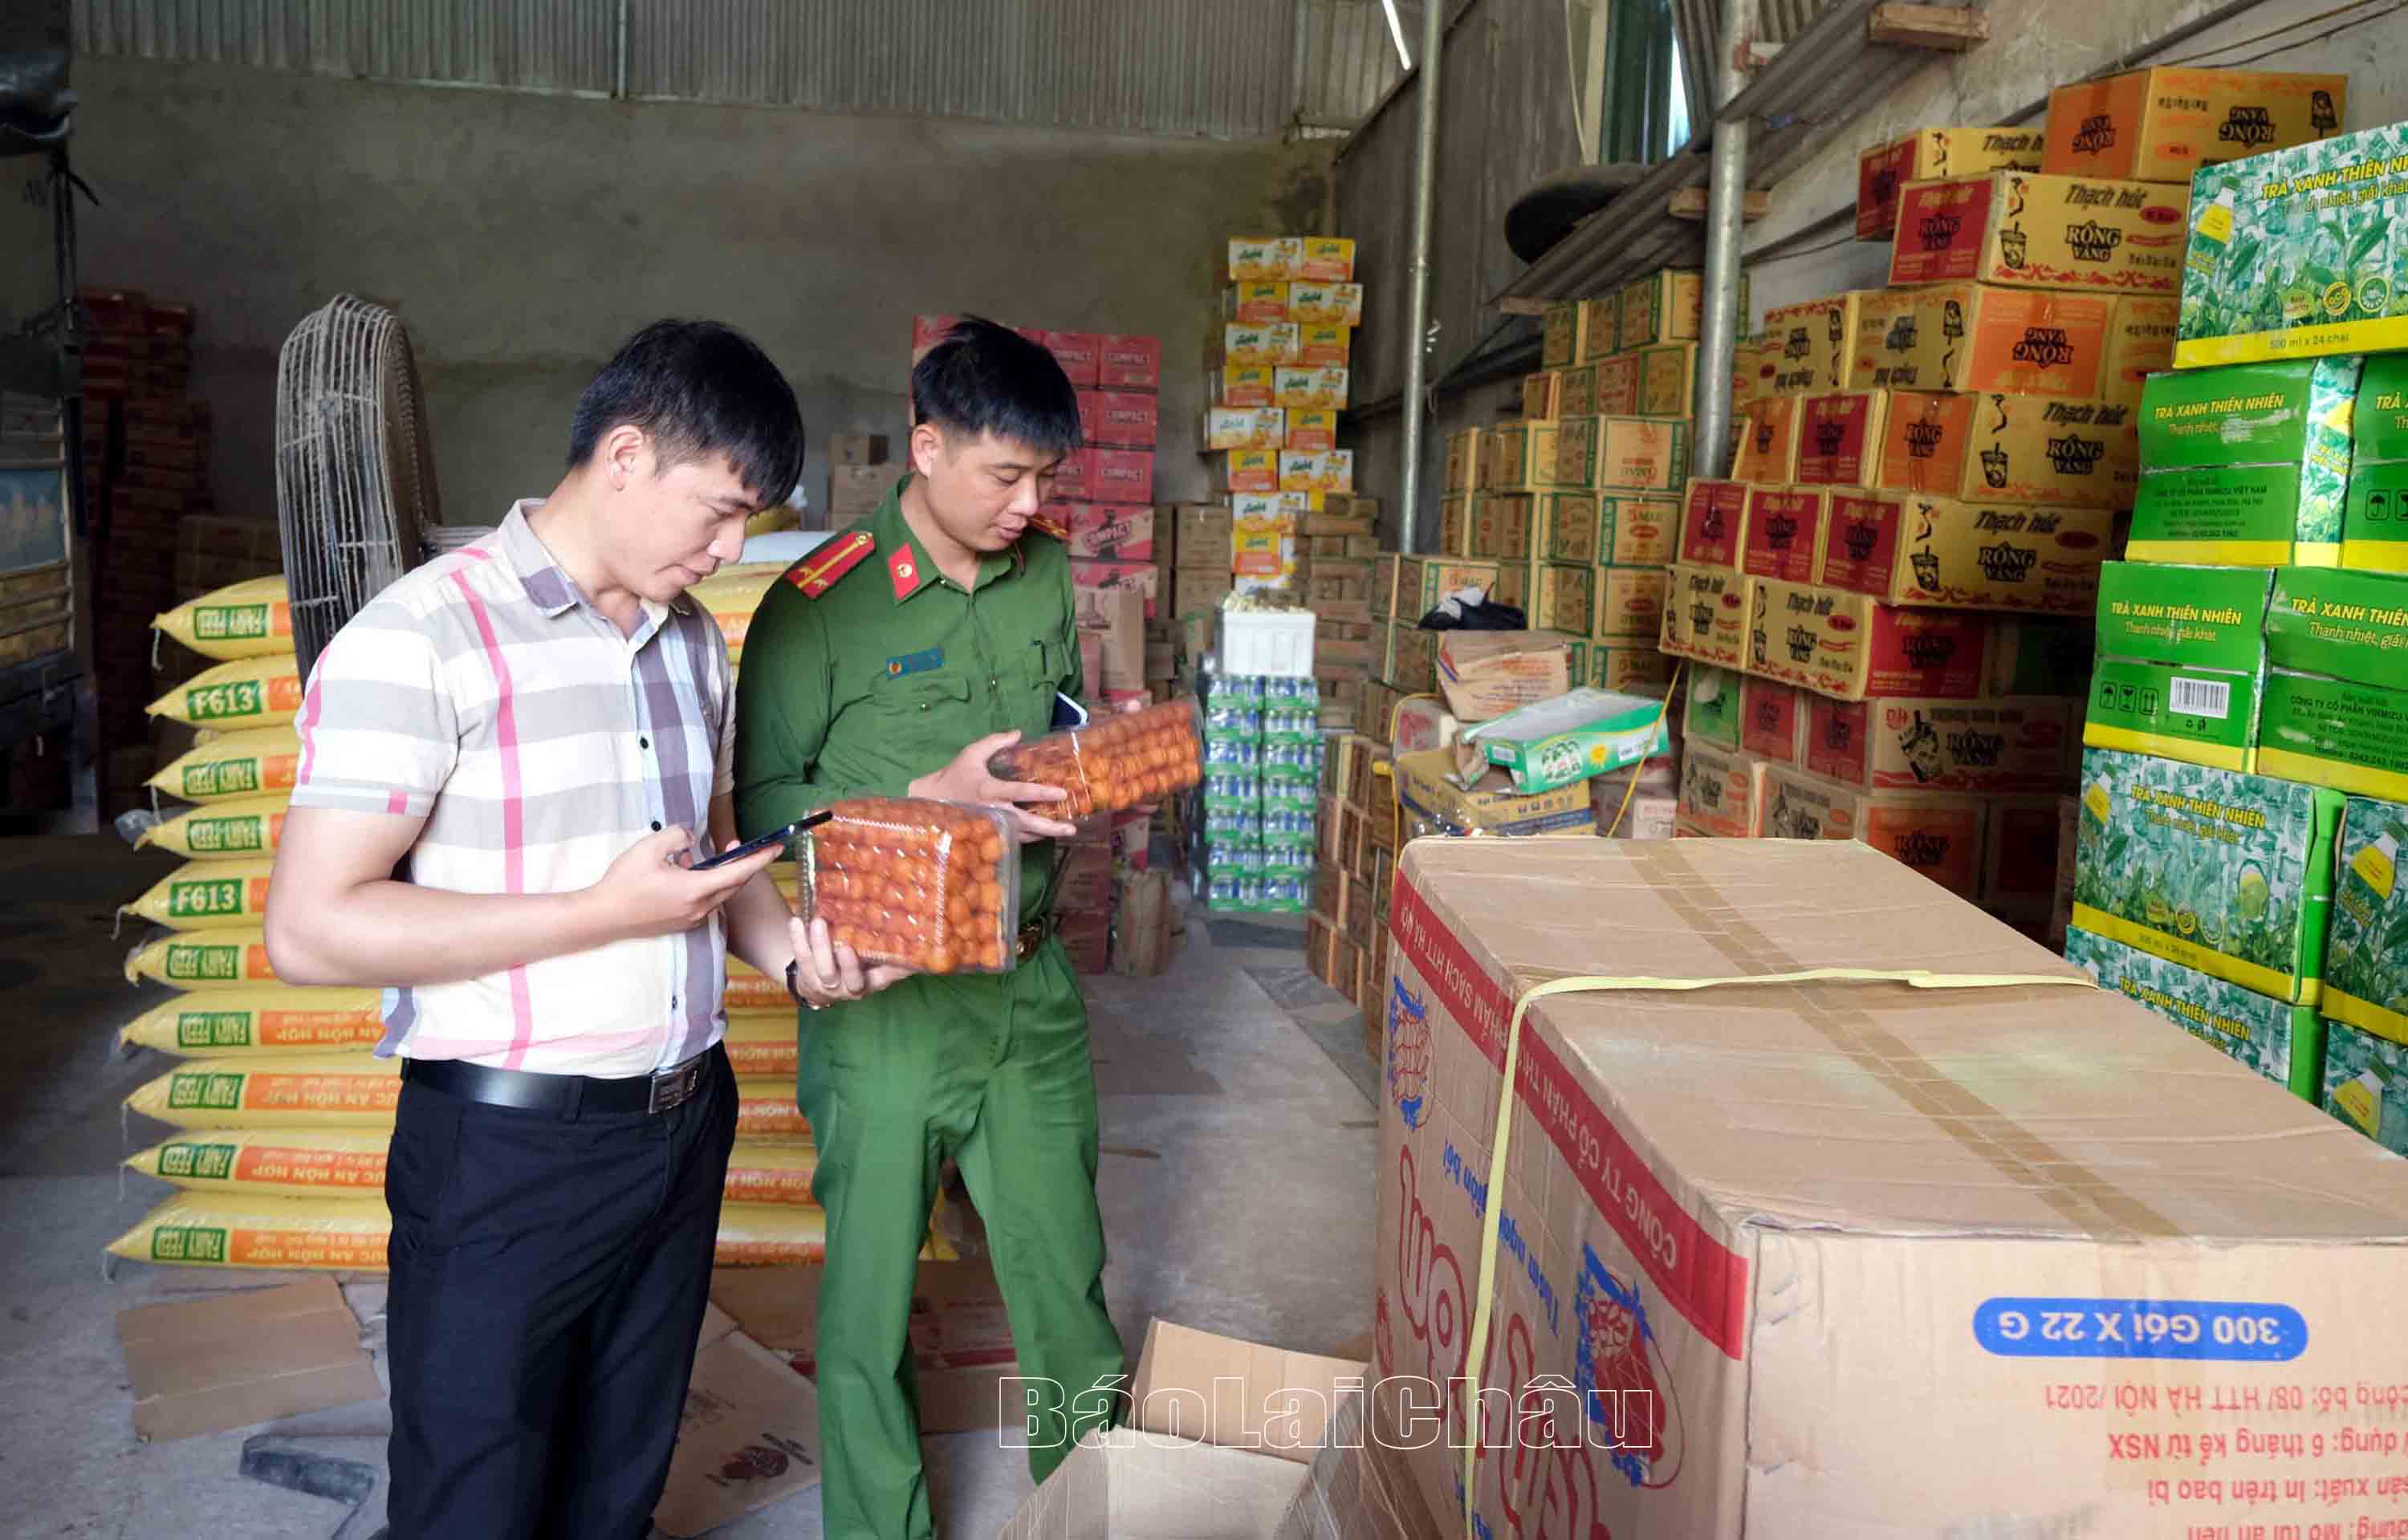 Đoàn liên ngành kiểm tra vệ sinh an toàn thực phẩm kiểm tra tại cửa hàng bán thực phẩm xã Lùng Thàng (huyện Sìn Hồ).